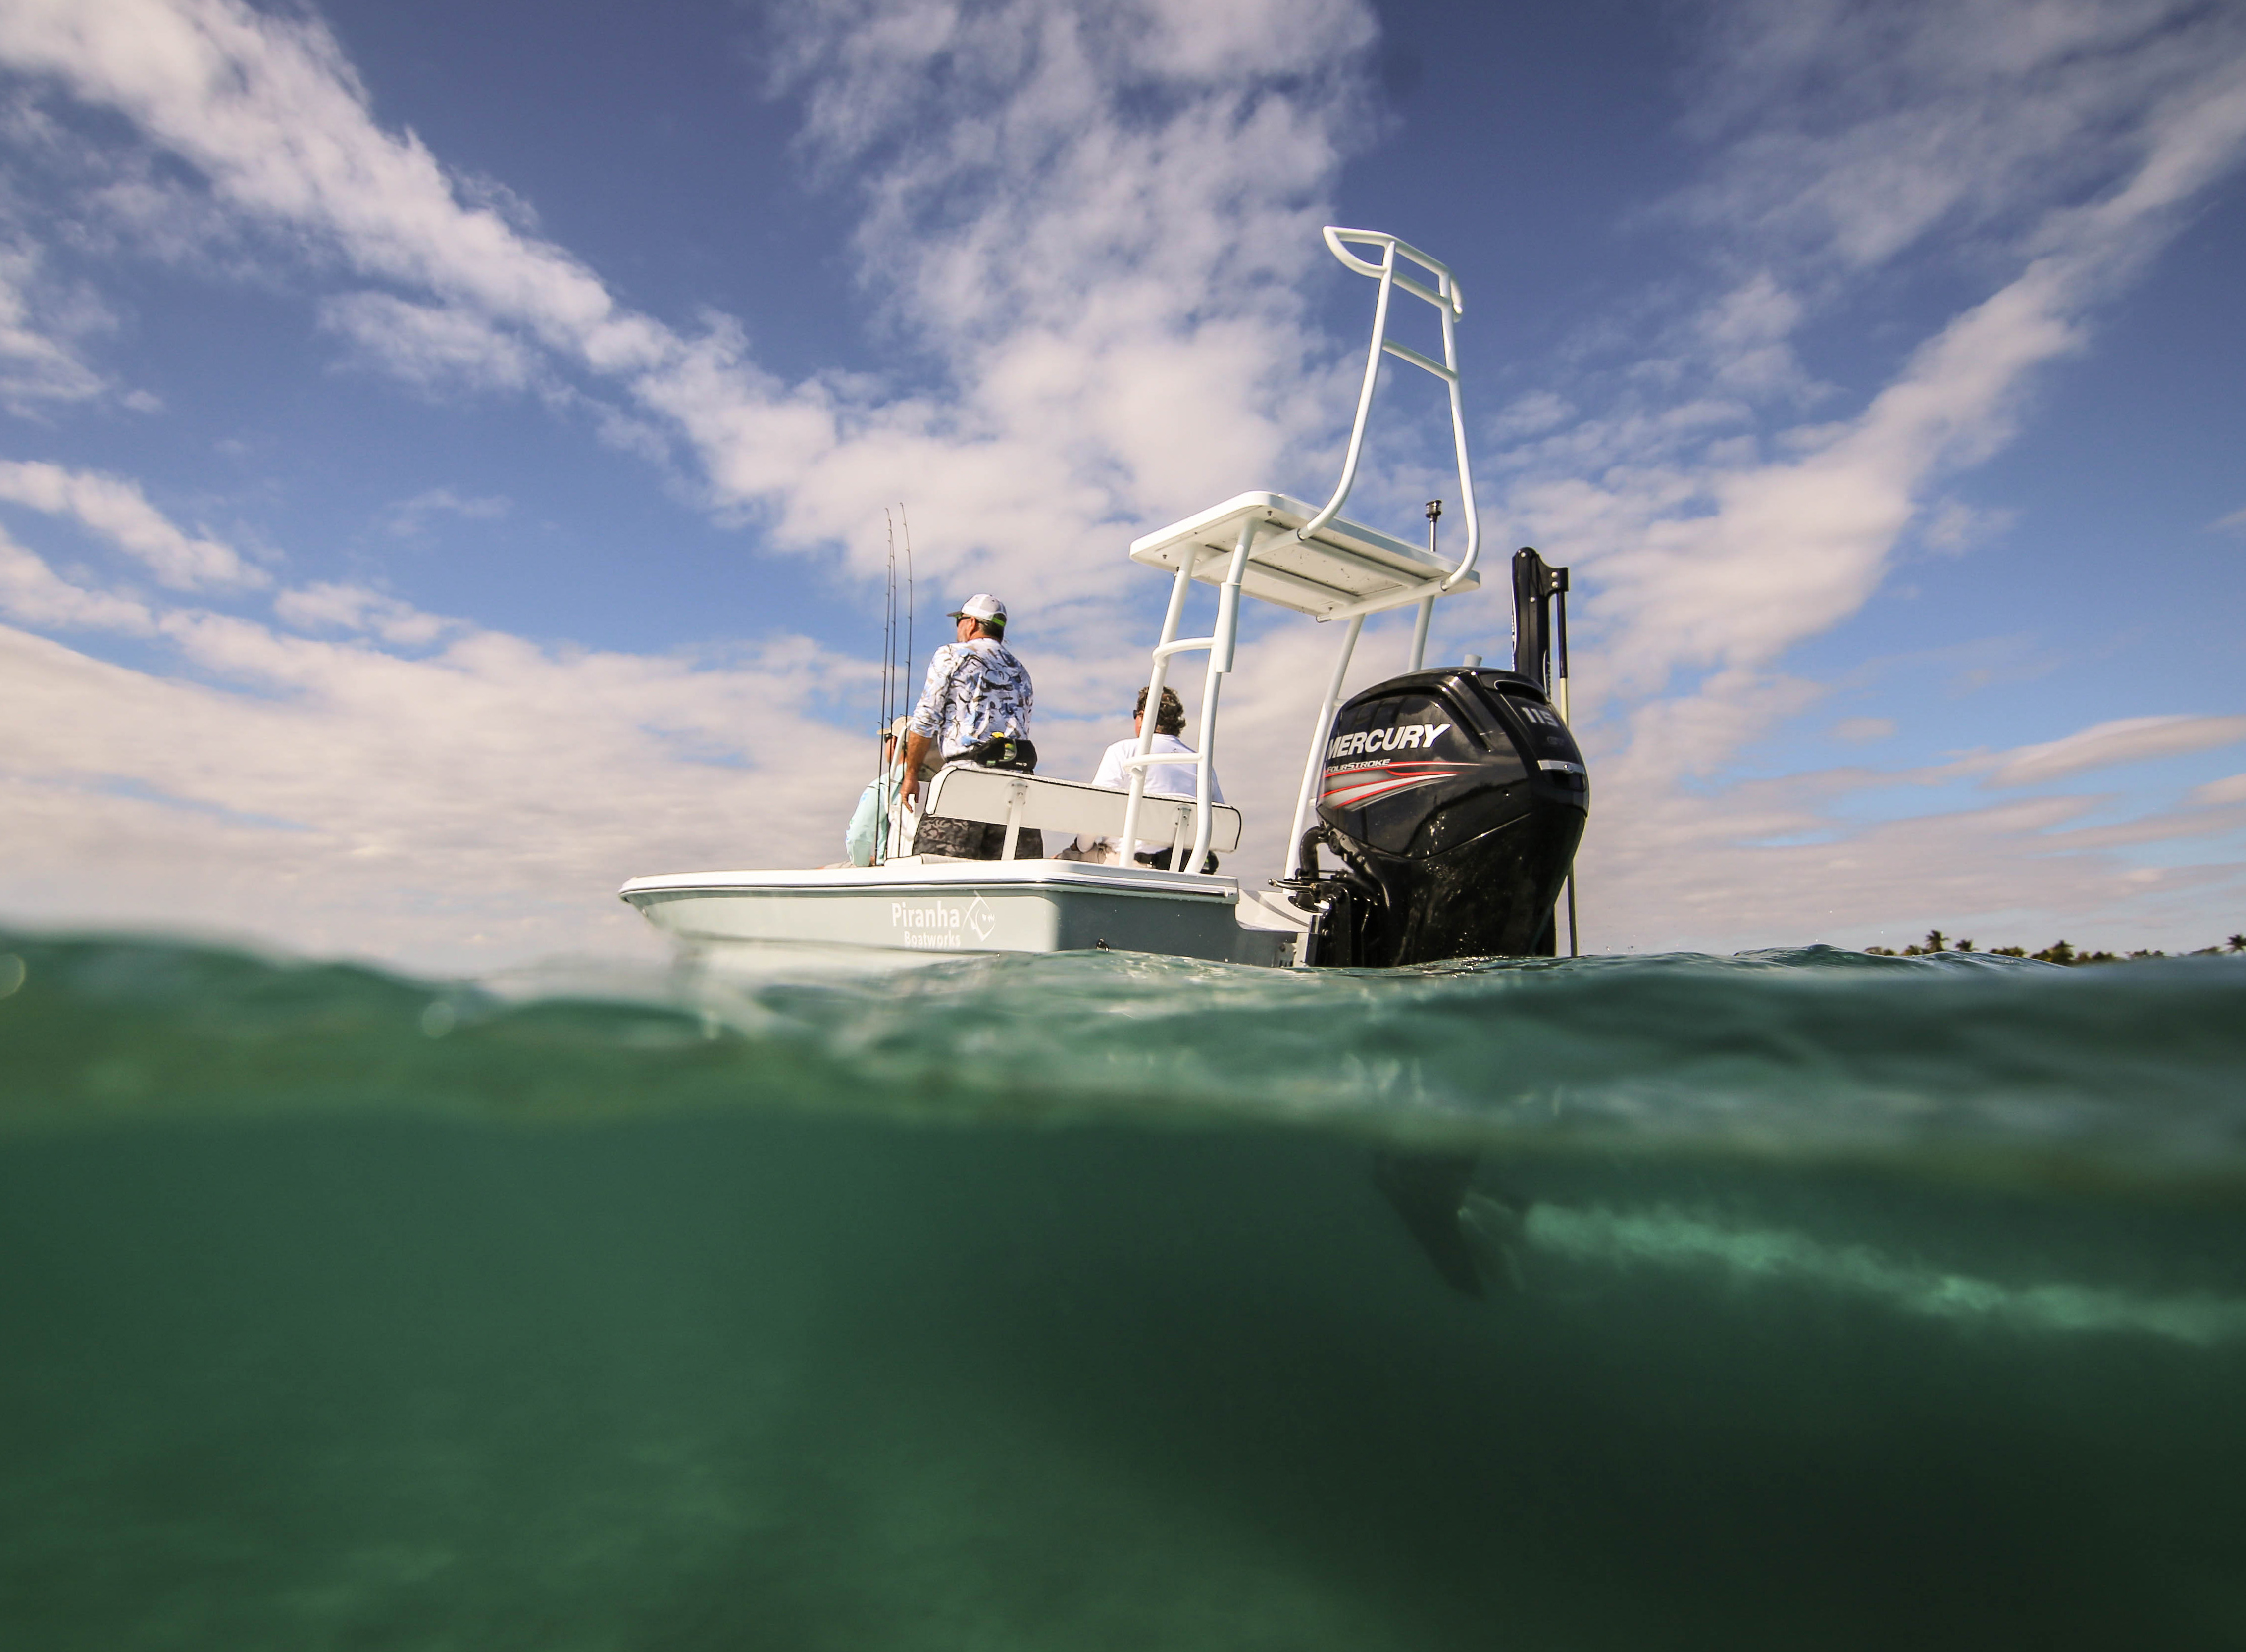 Florida Sportsman Best Boat - Piranha F2000, NauticStar 265 XTS, OBX 32CC